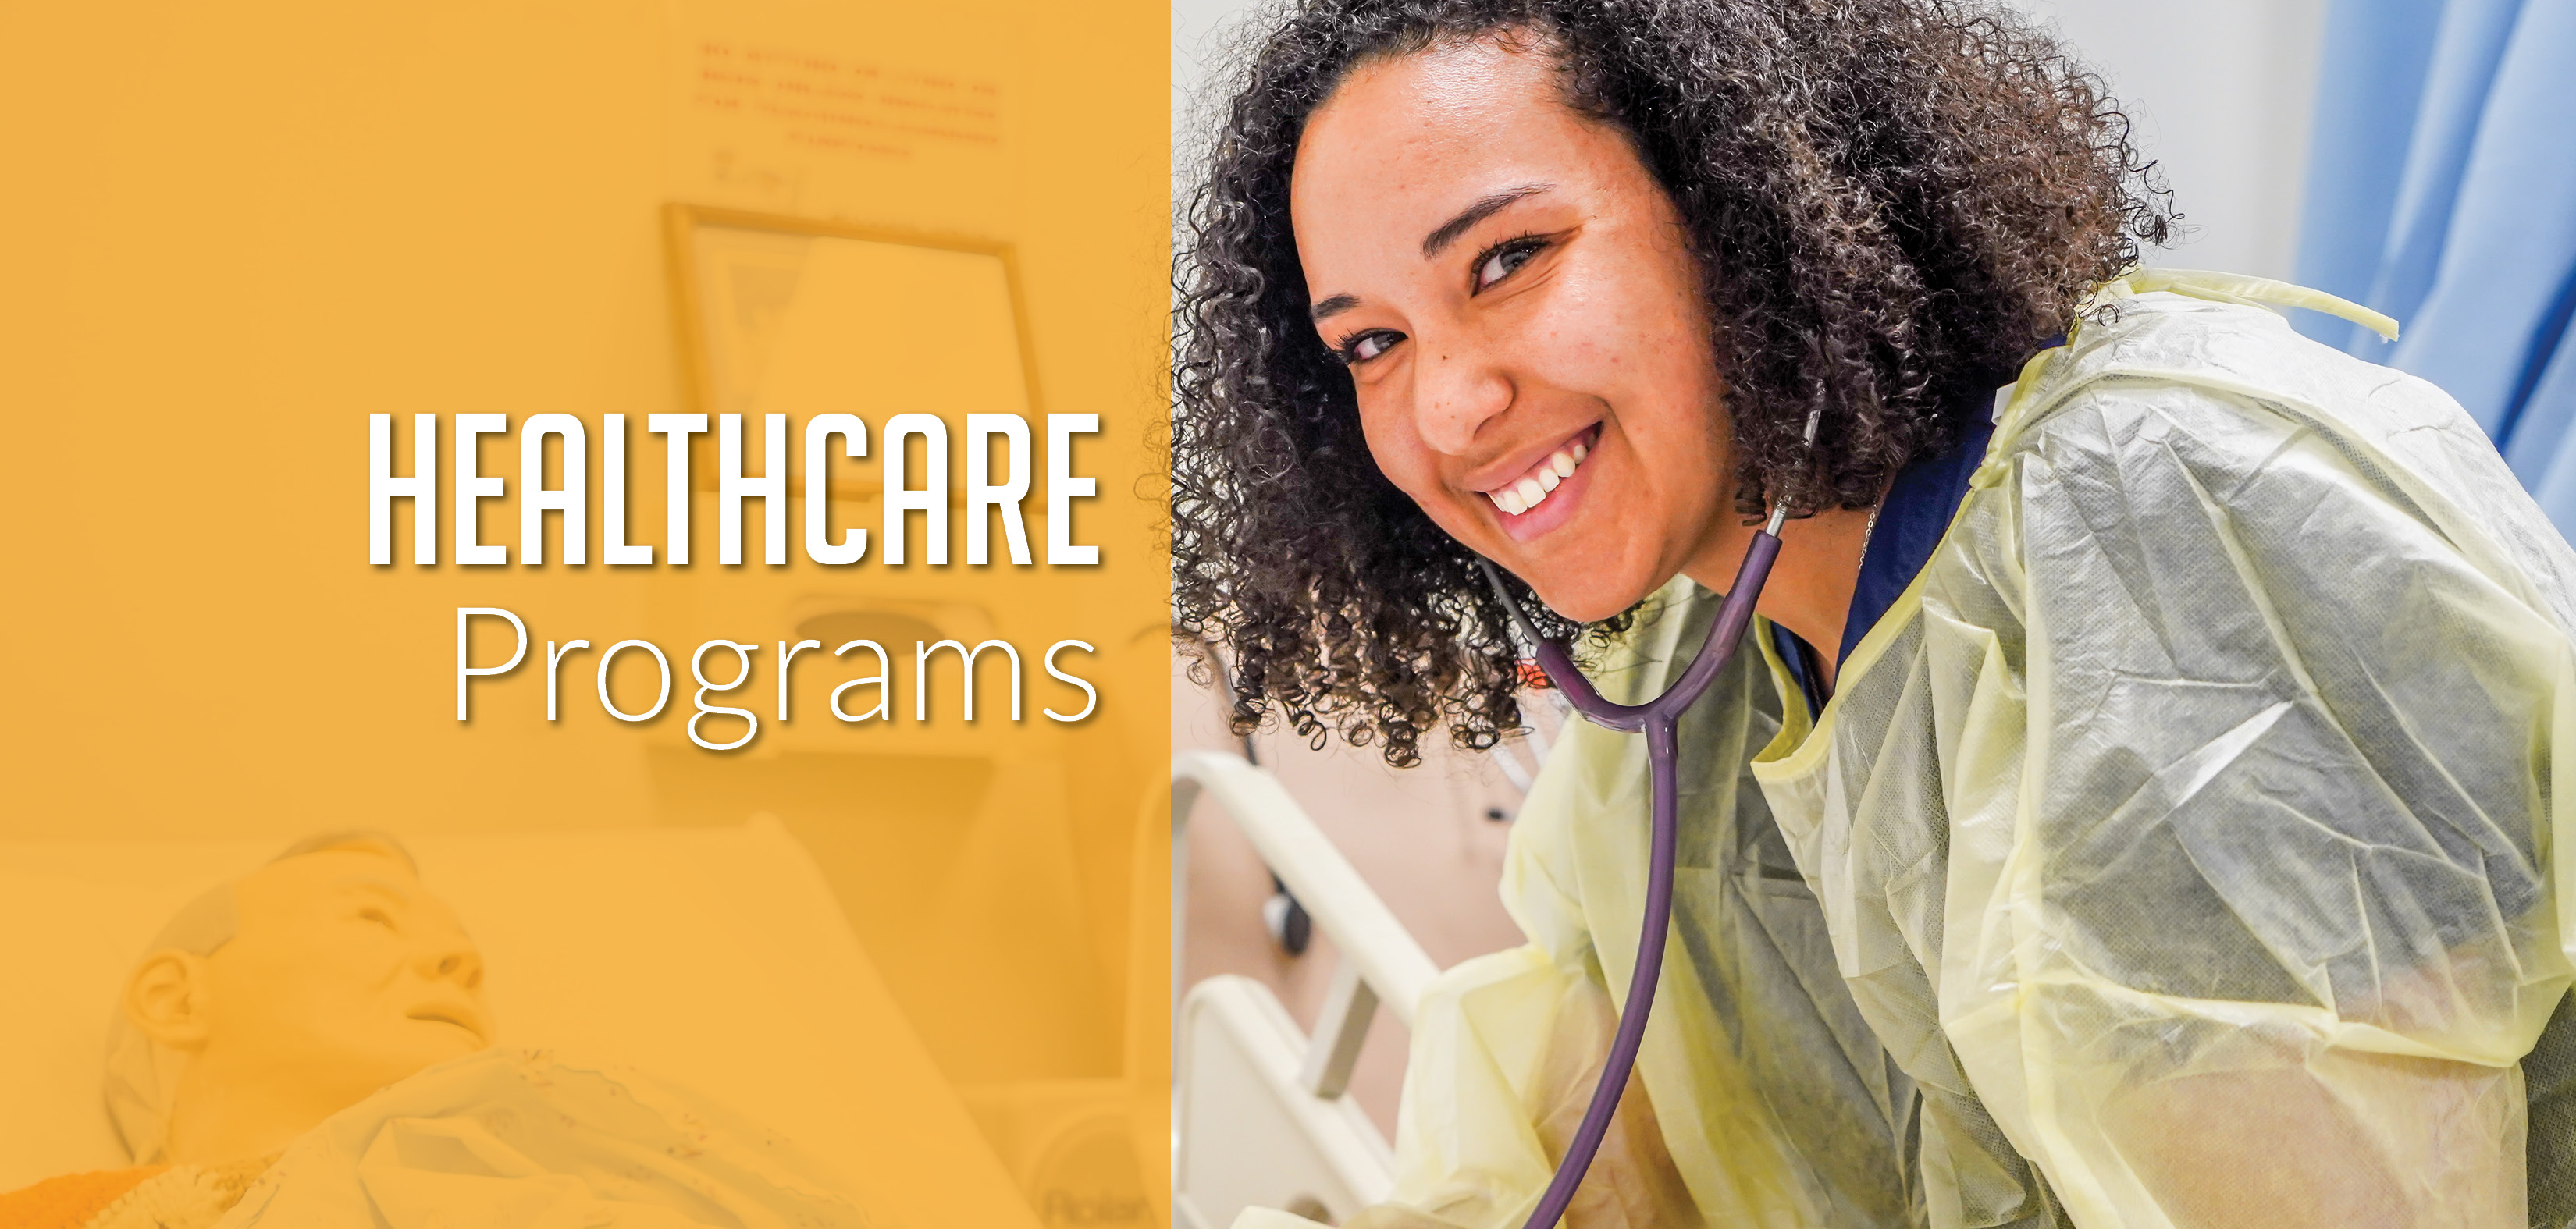 Healthcare Programs: RN, PN, STNA